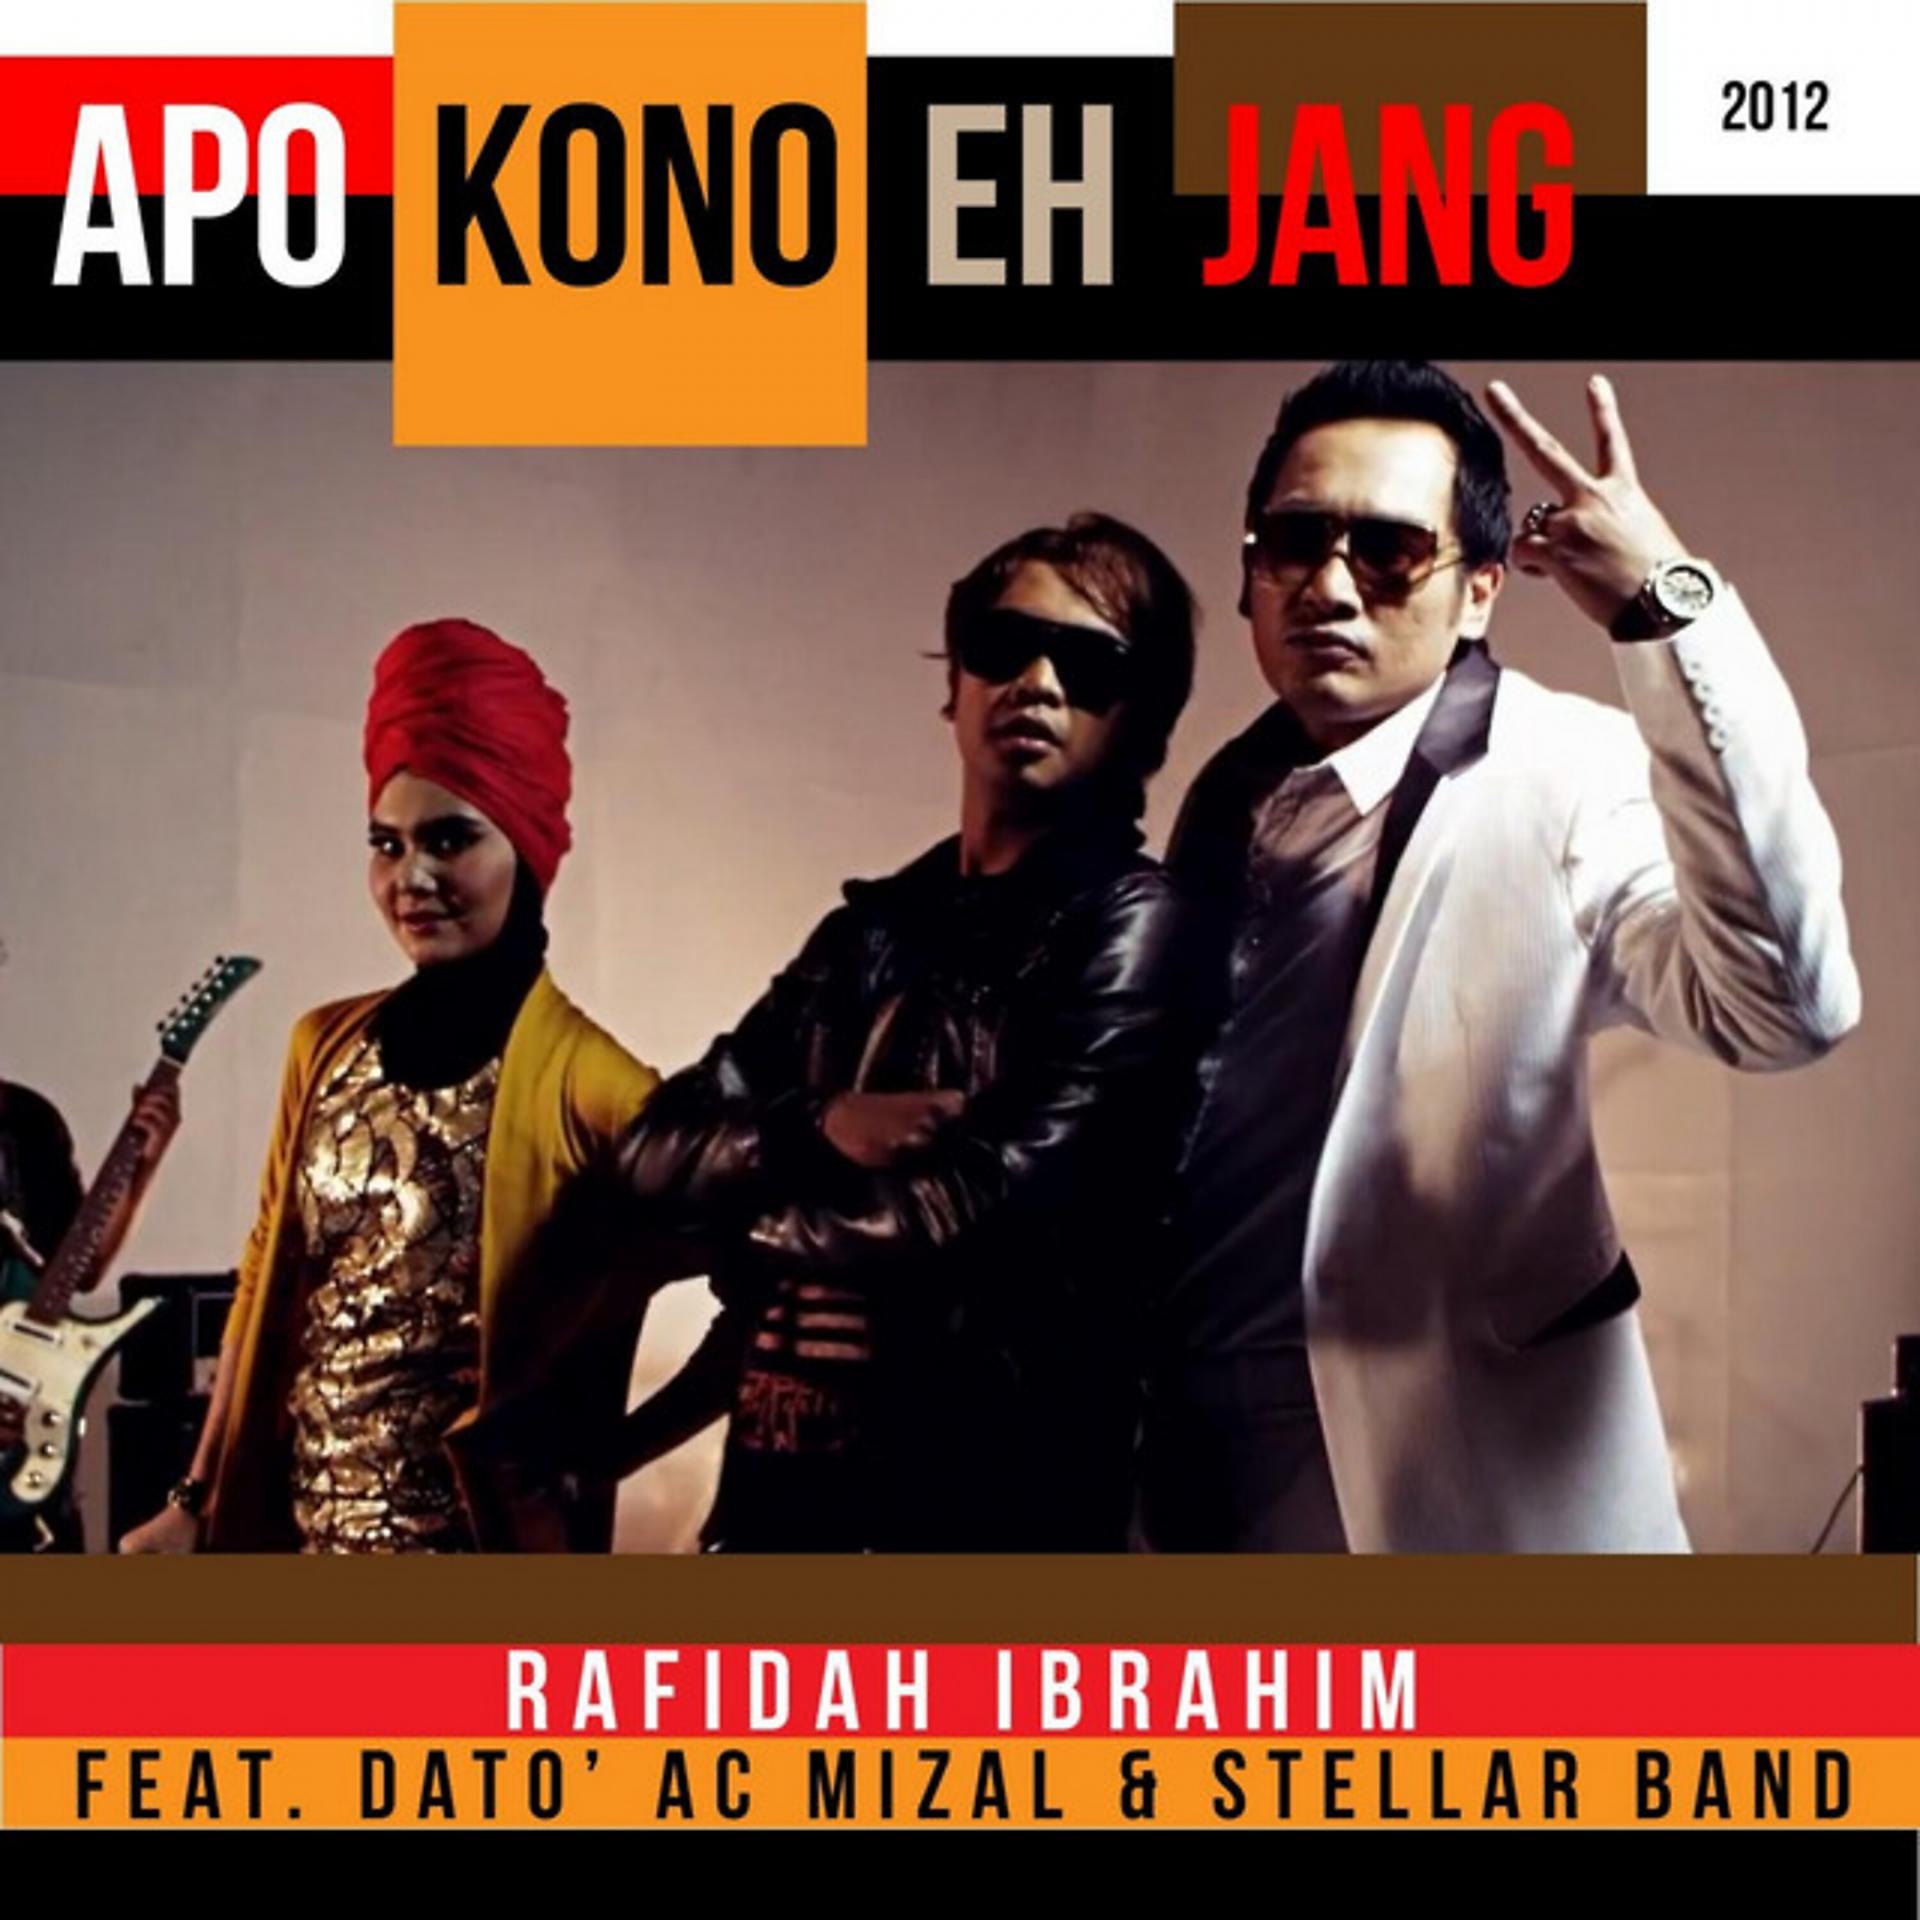 Постер альбома Apa Kono Eh Jang 2012